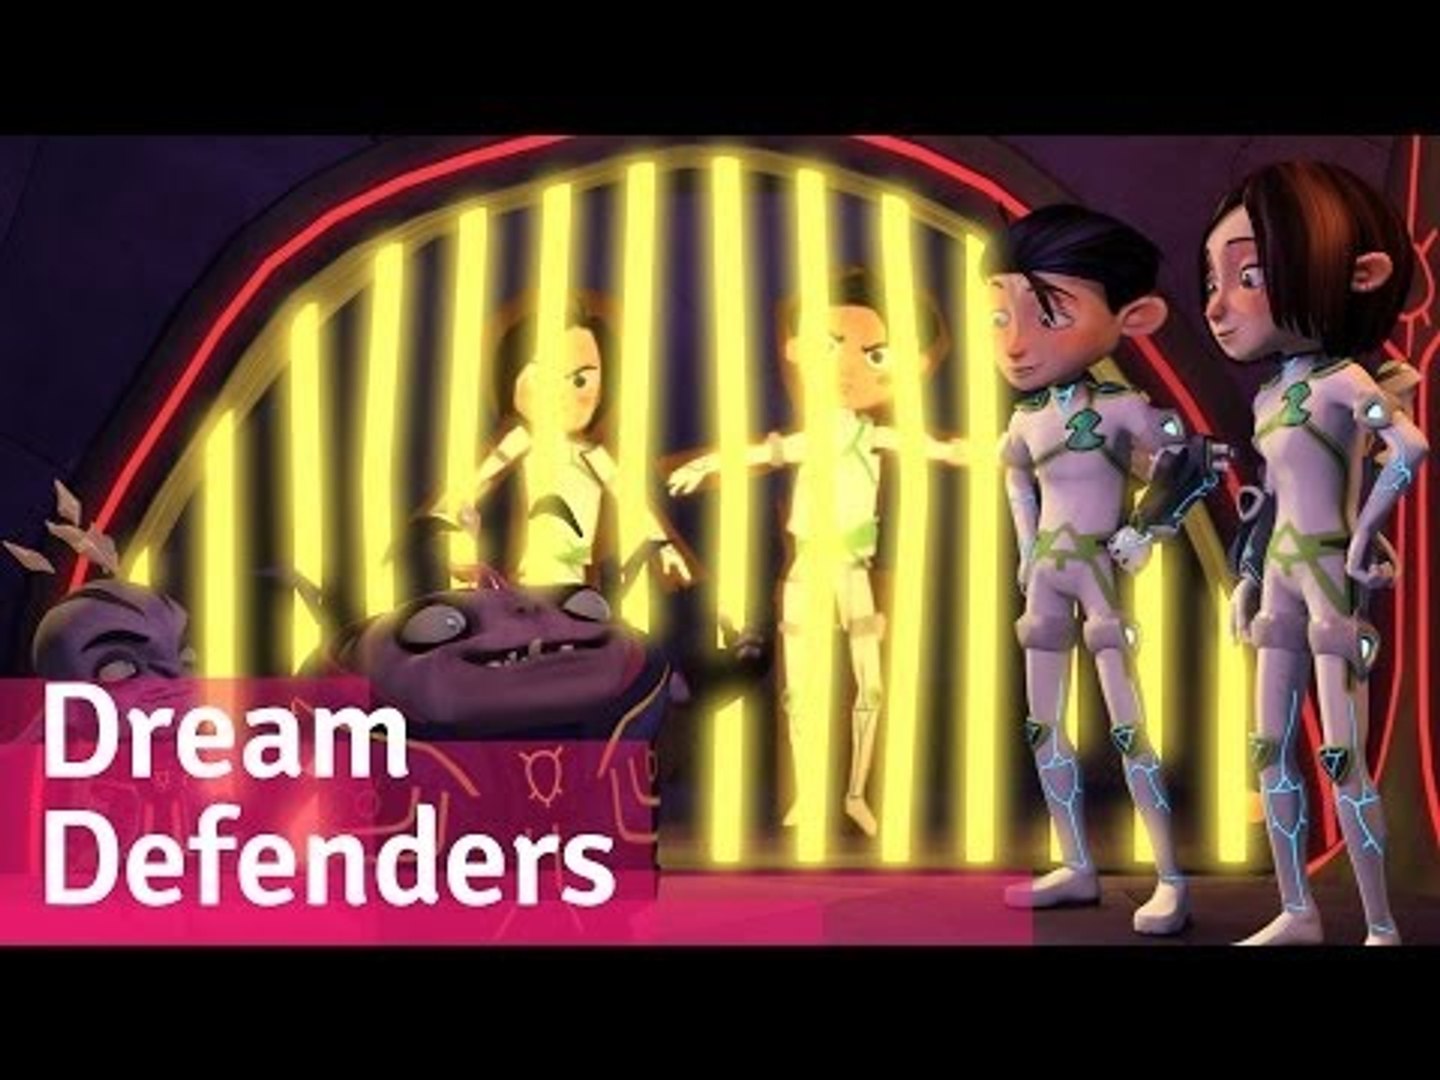 Dream Defenders - Animation Short Film // Viddsee